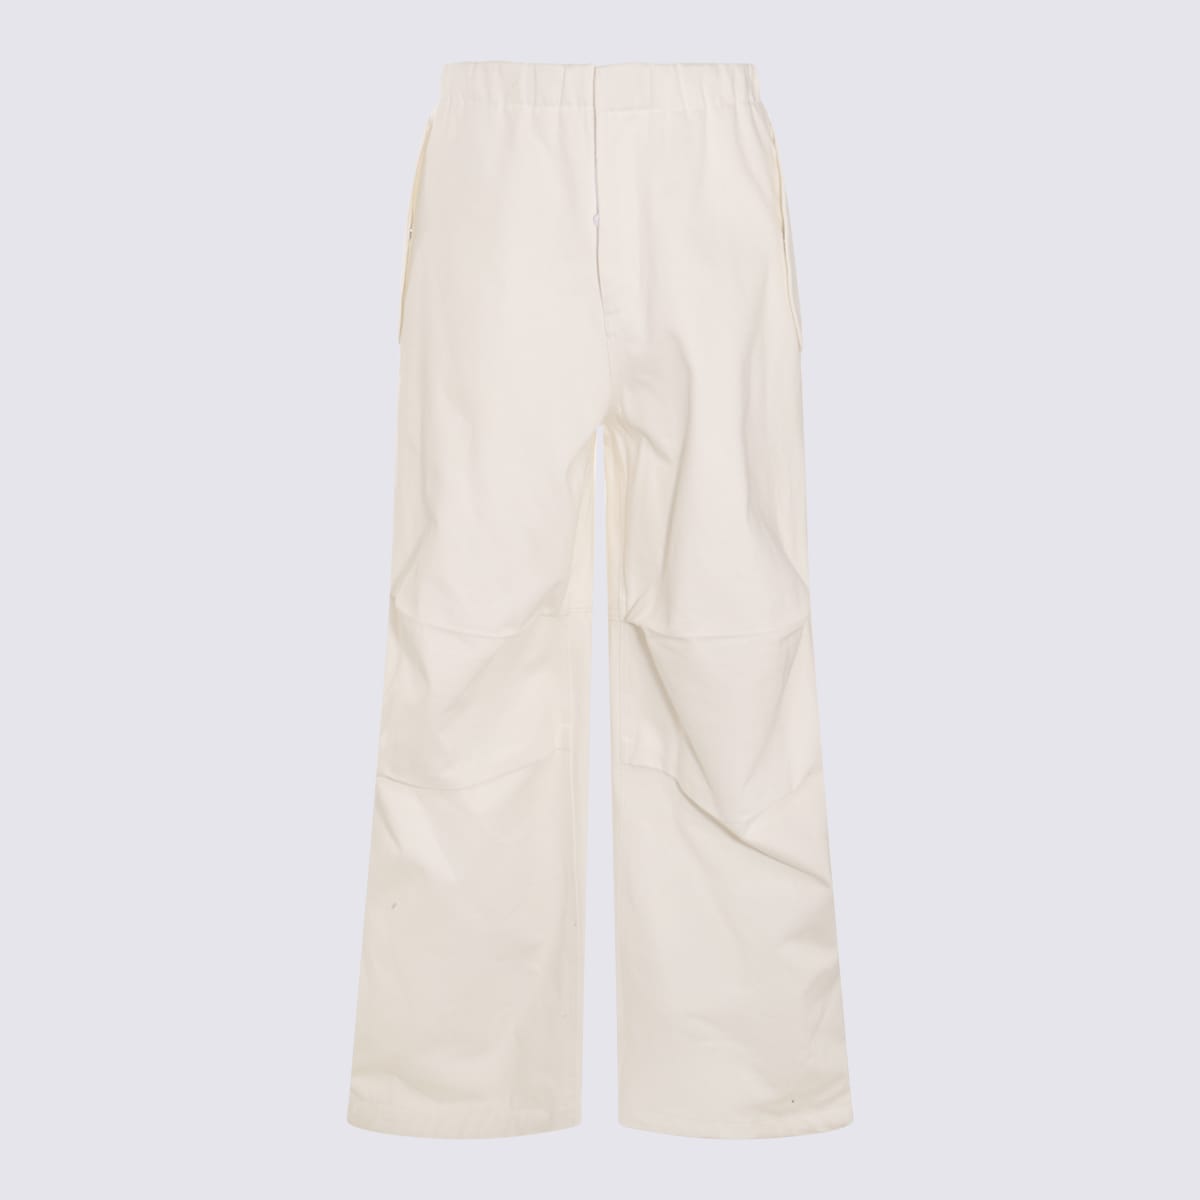 White Cotton Pants